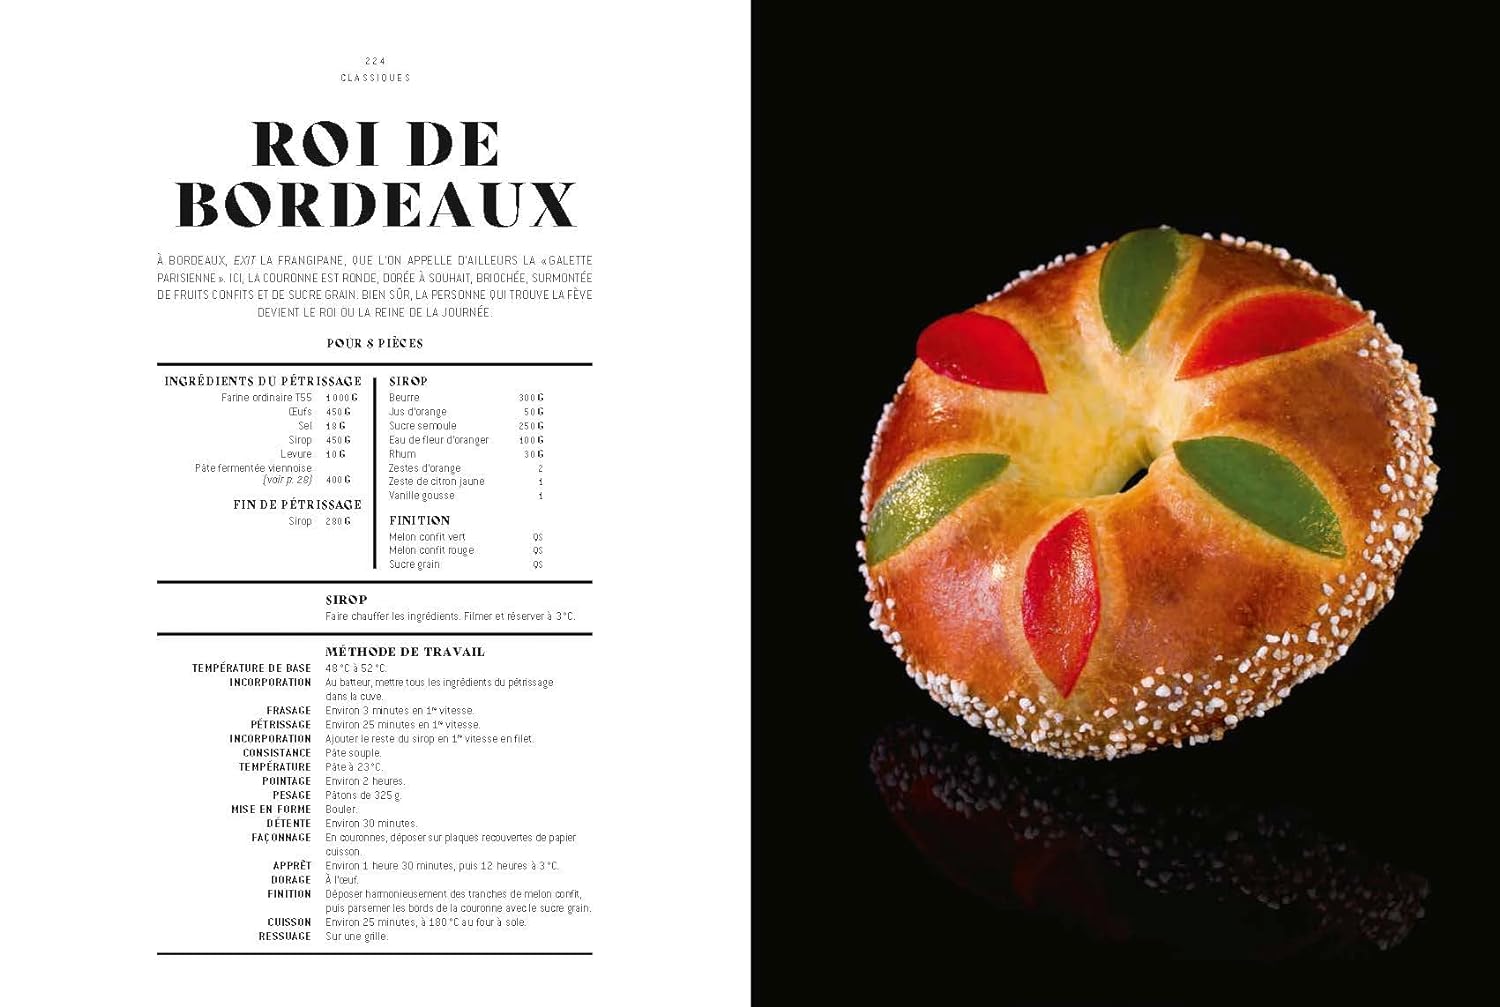 Le Grand Livre de la Boulangerie - Viennoiserie - L'intégrale en 200 recettes    - Ducasse Ed. - Livre de boulangerie - 